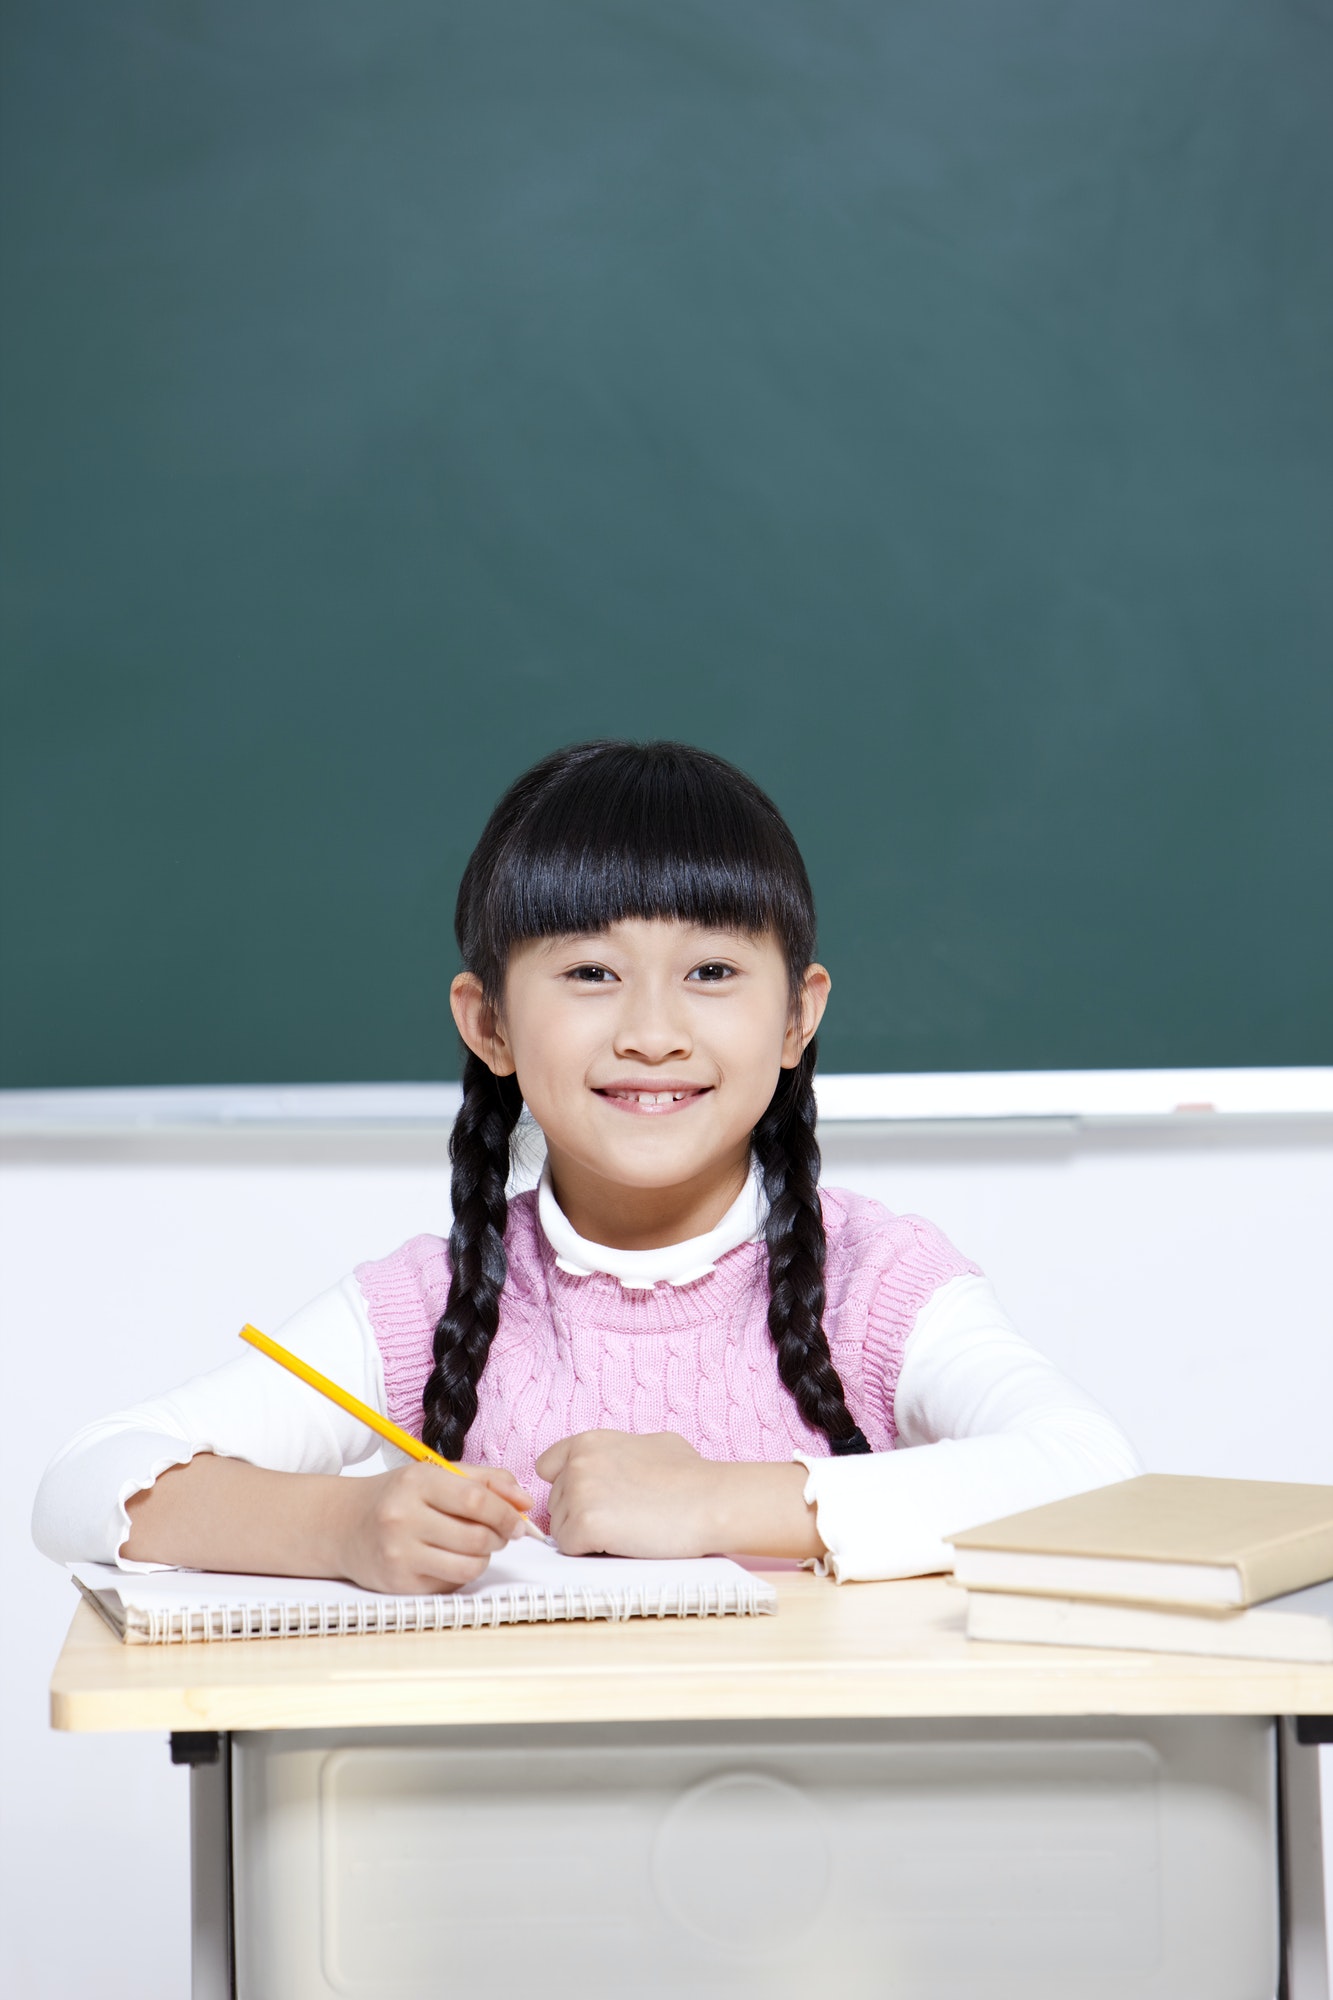 Cheerful schoolgirl writing in classroom